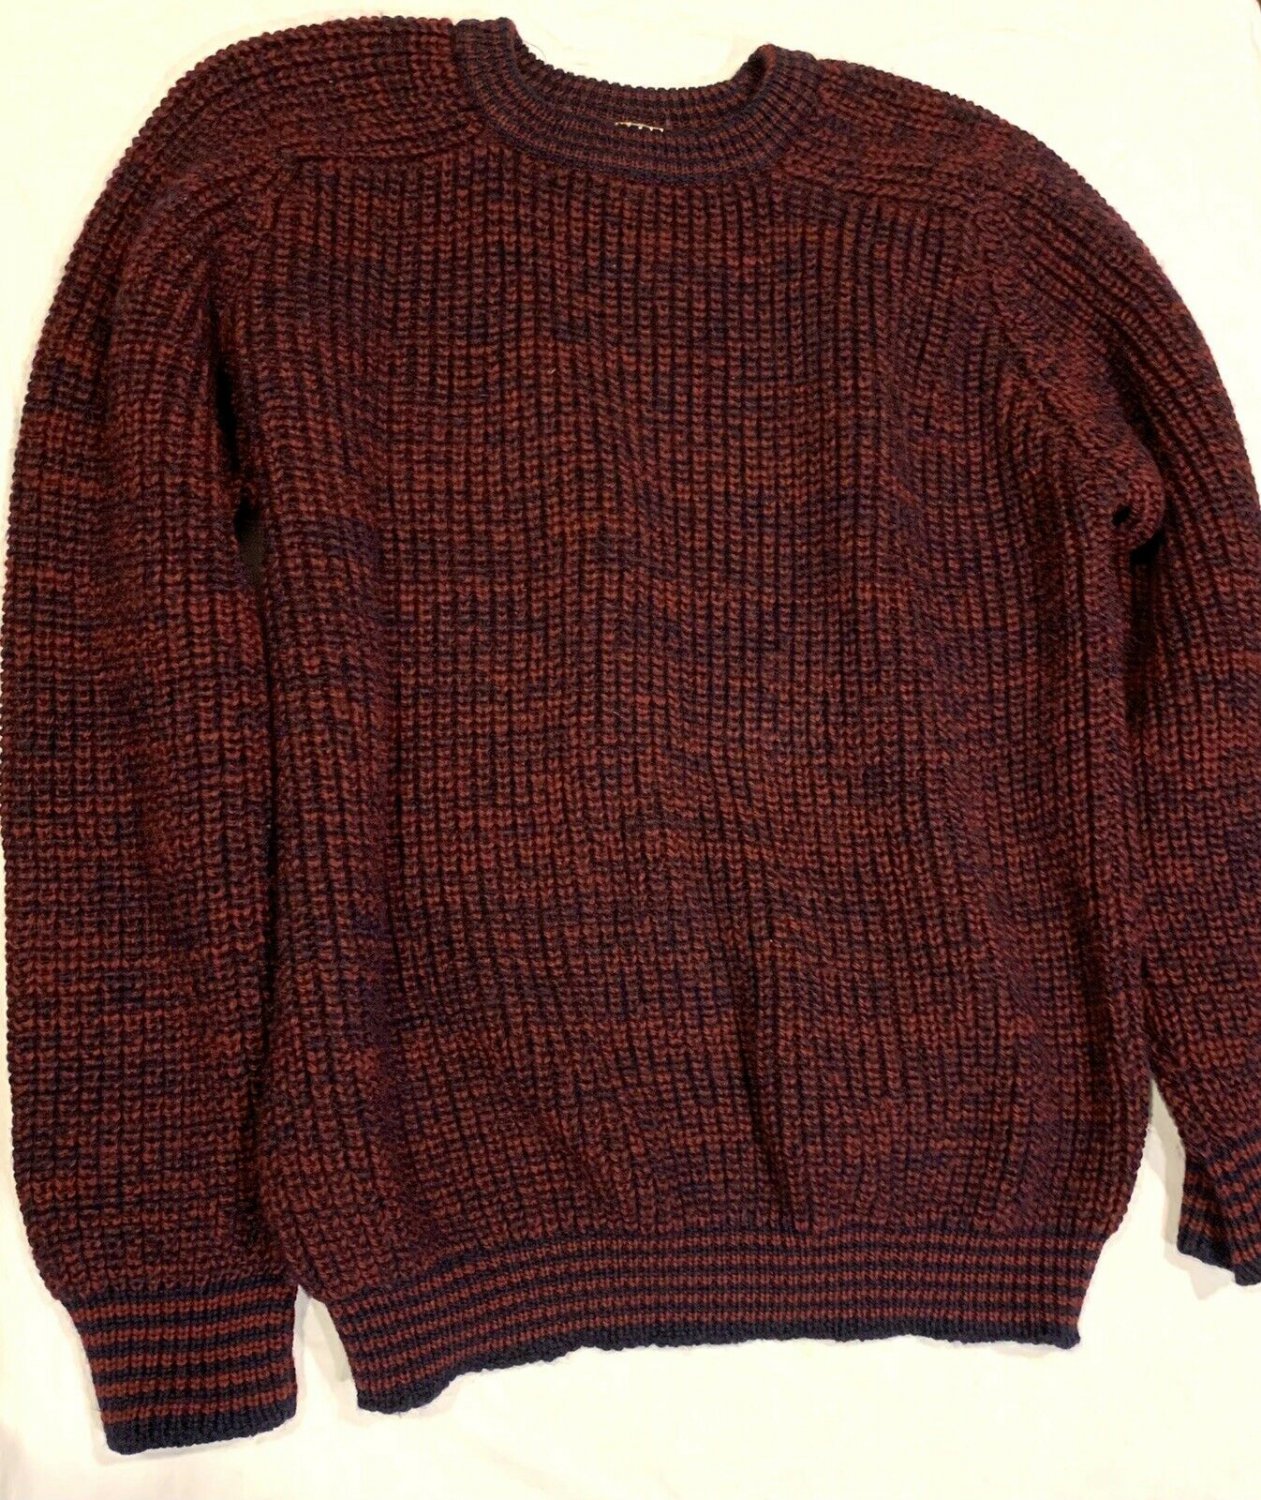 Antartex 100% Wool Red Sweater Lake Lamond, Scotland Men’s Size Large